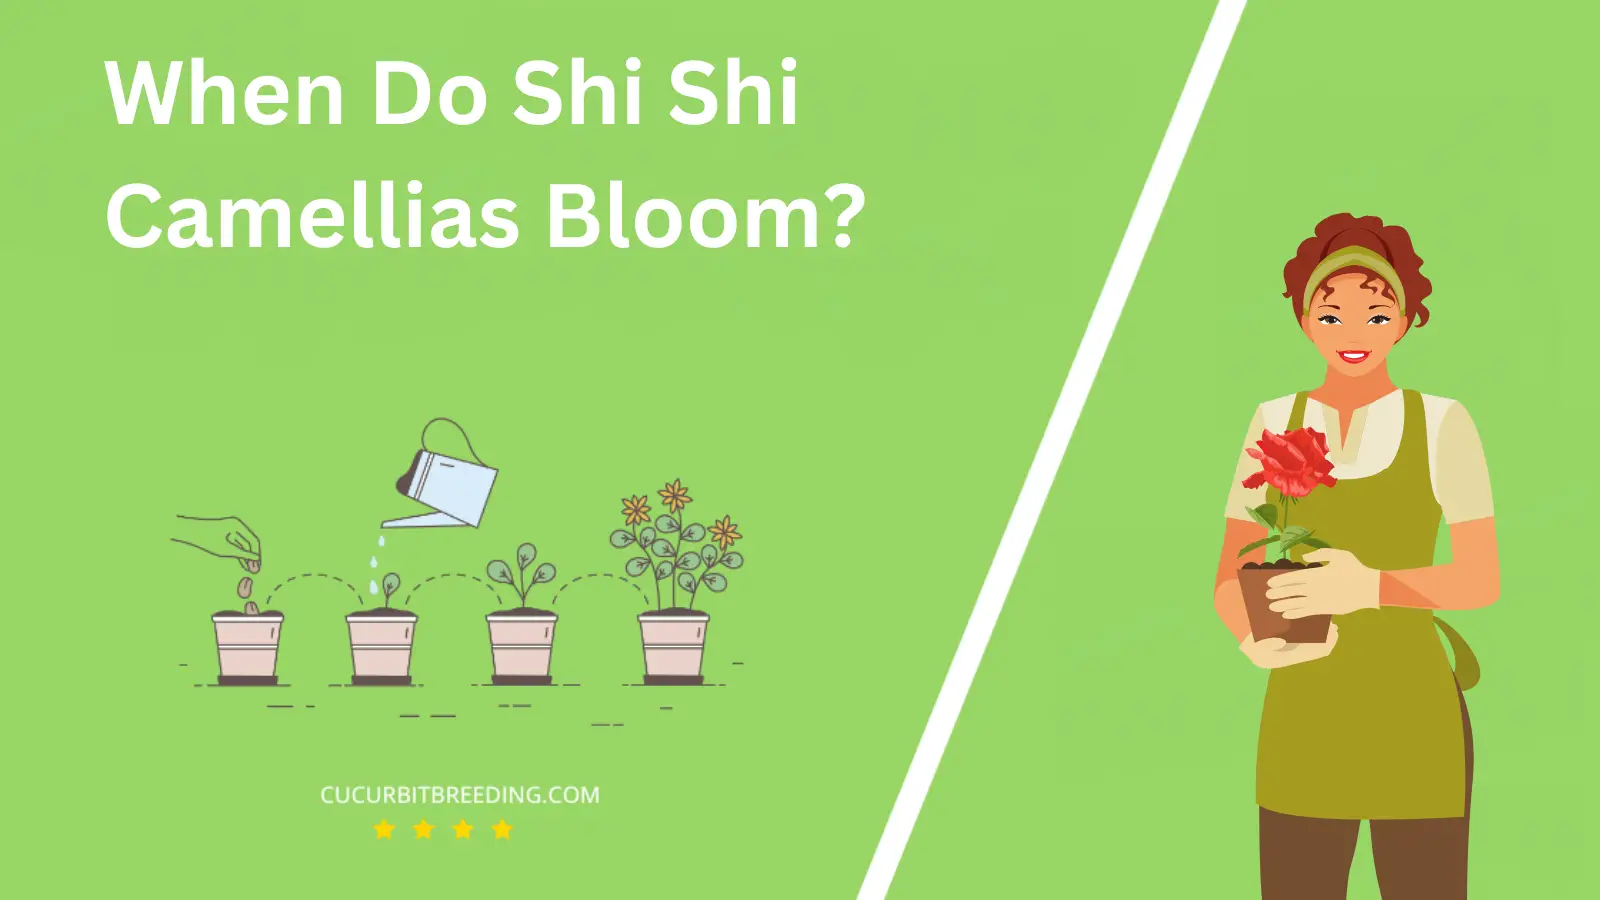 When Do Shi Shi Camellias Bloom?